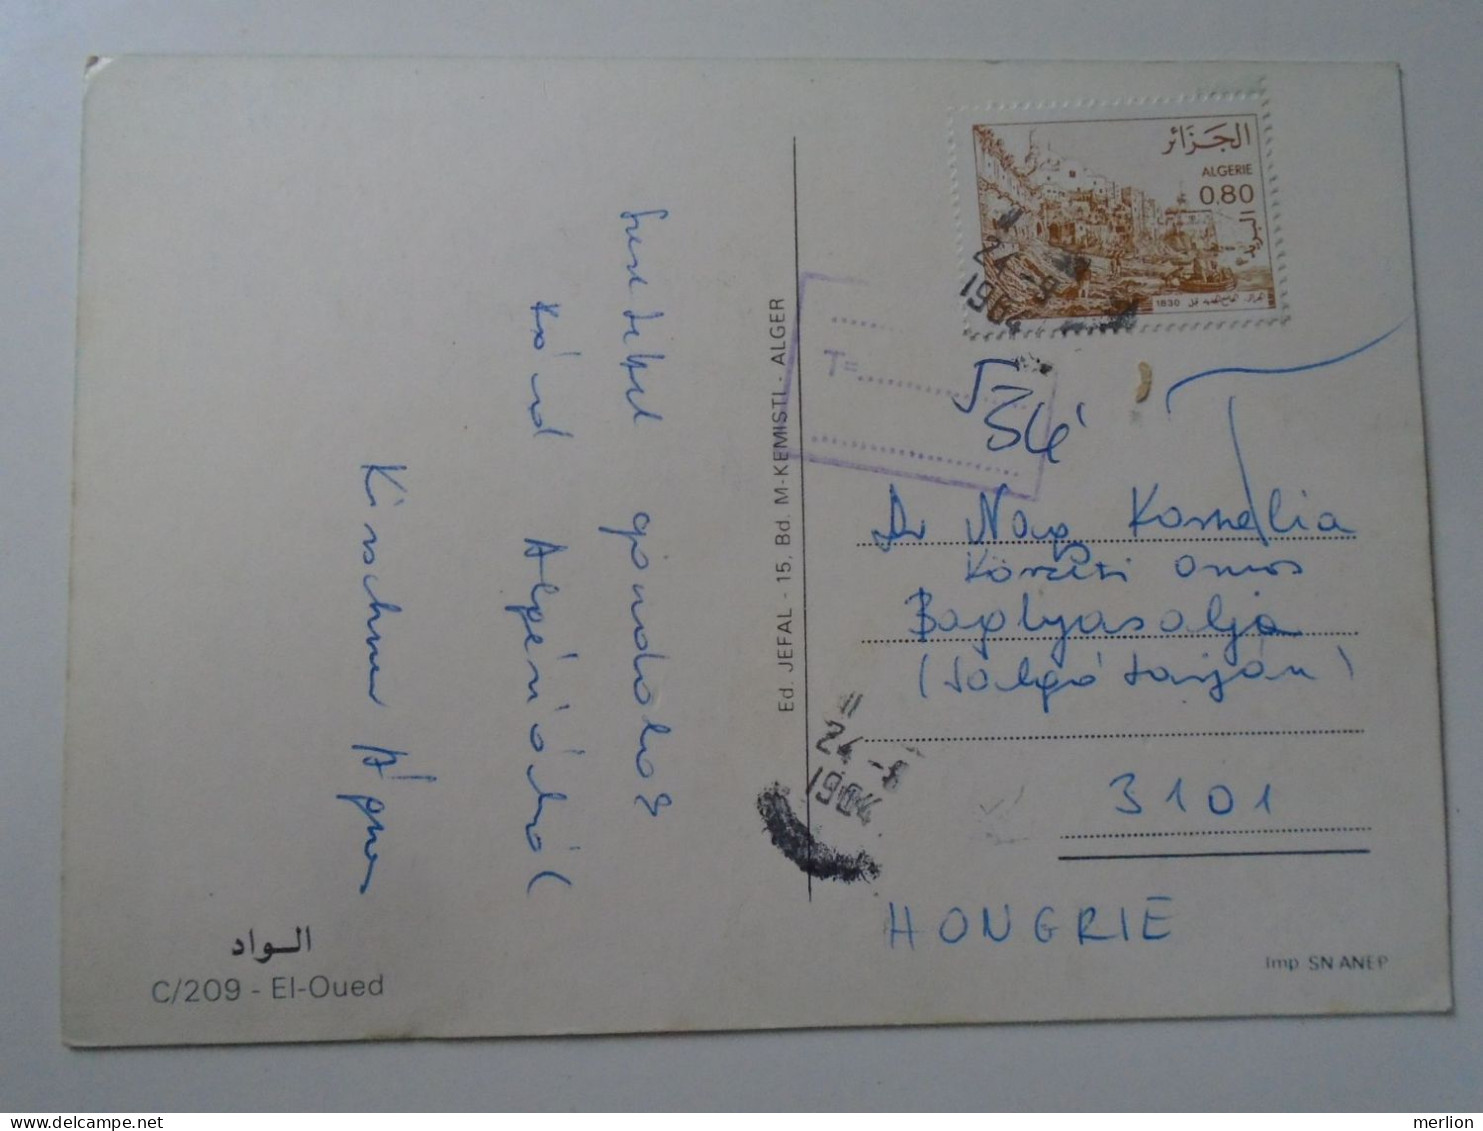 D195488   Algerie Algeria   El-Oued -1964  Sent To Hungary  Postage Due  Hungarian Postal Handstamp - El-Oued